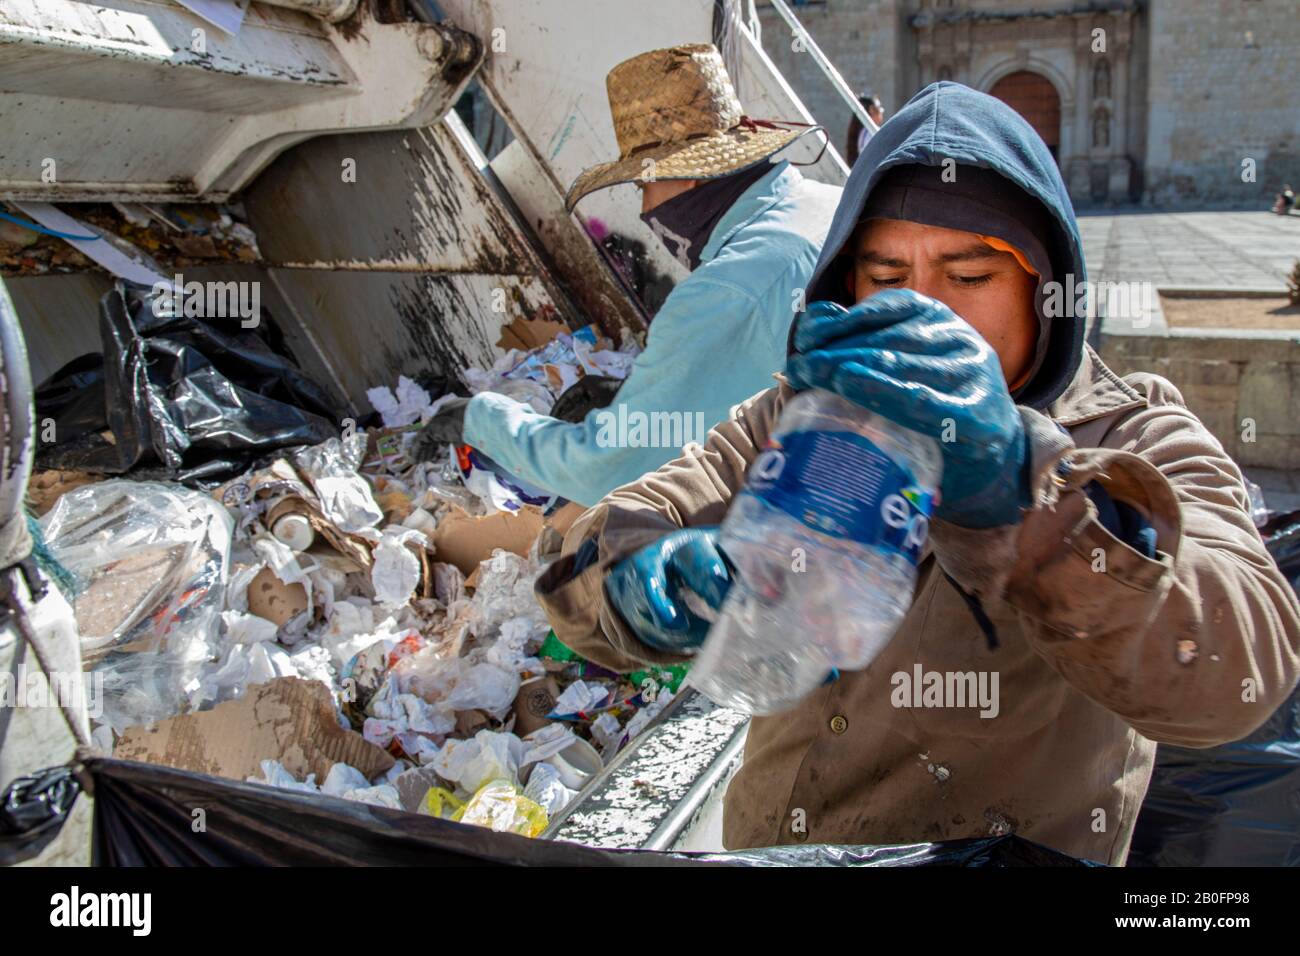 Oaxaca, Mexique - les collecteurs de déchets trient les matières recyclables d'autres ordures à l'arrière d'un camion à ordures. Banque D'Images